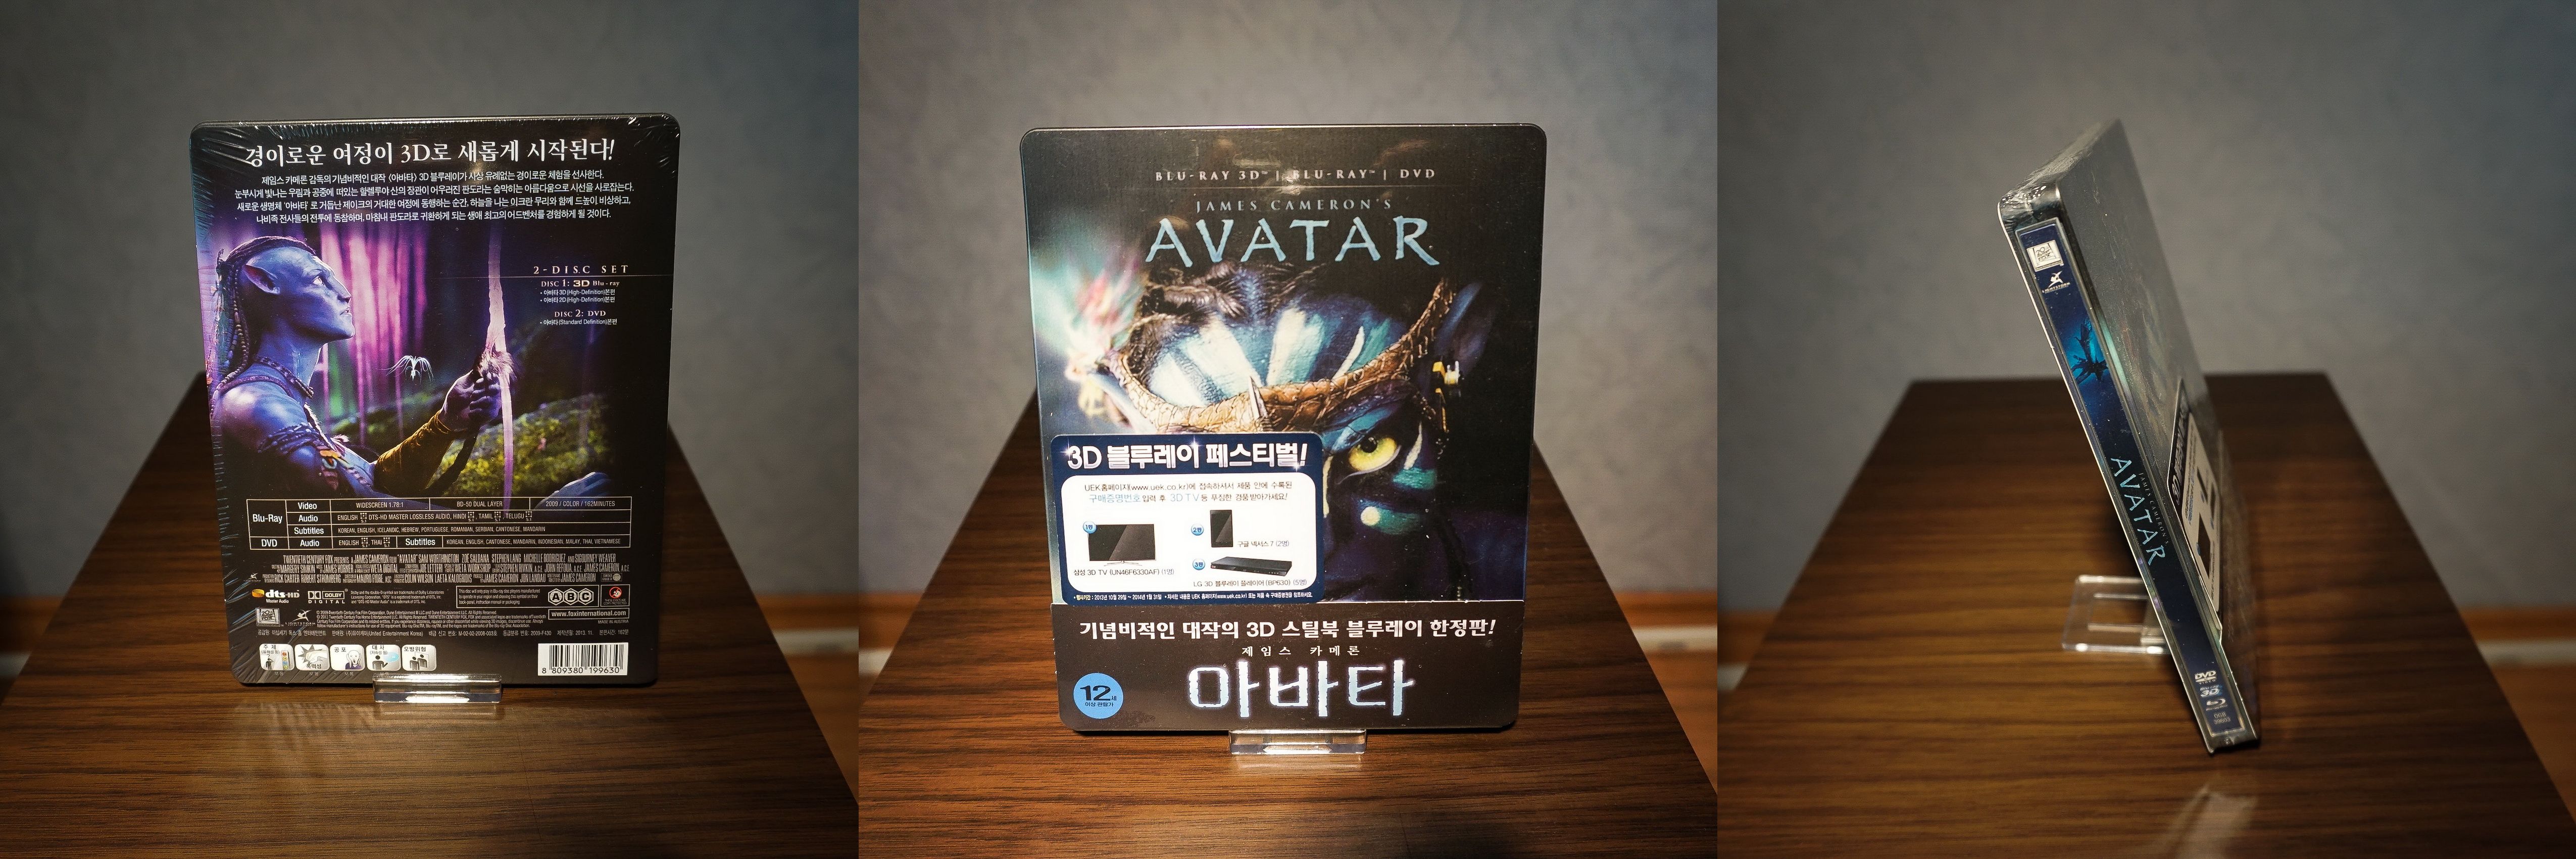 Avatar 3D Korea